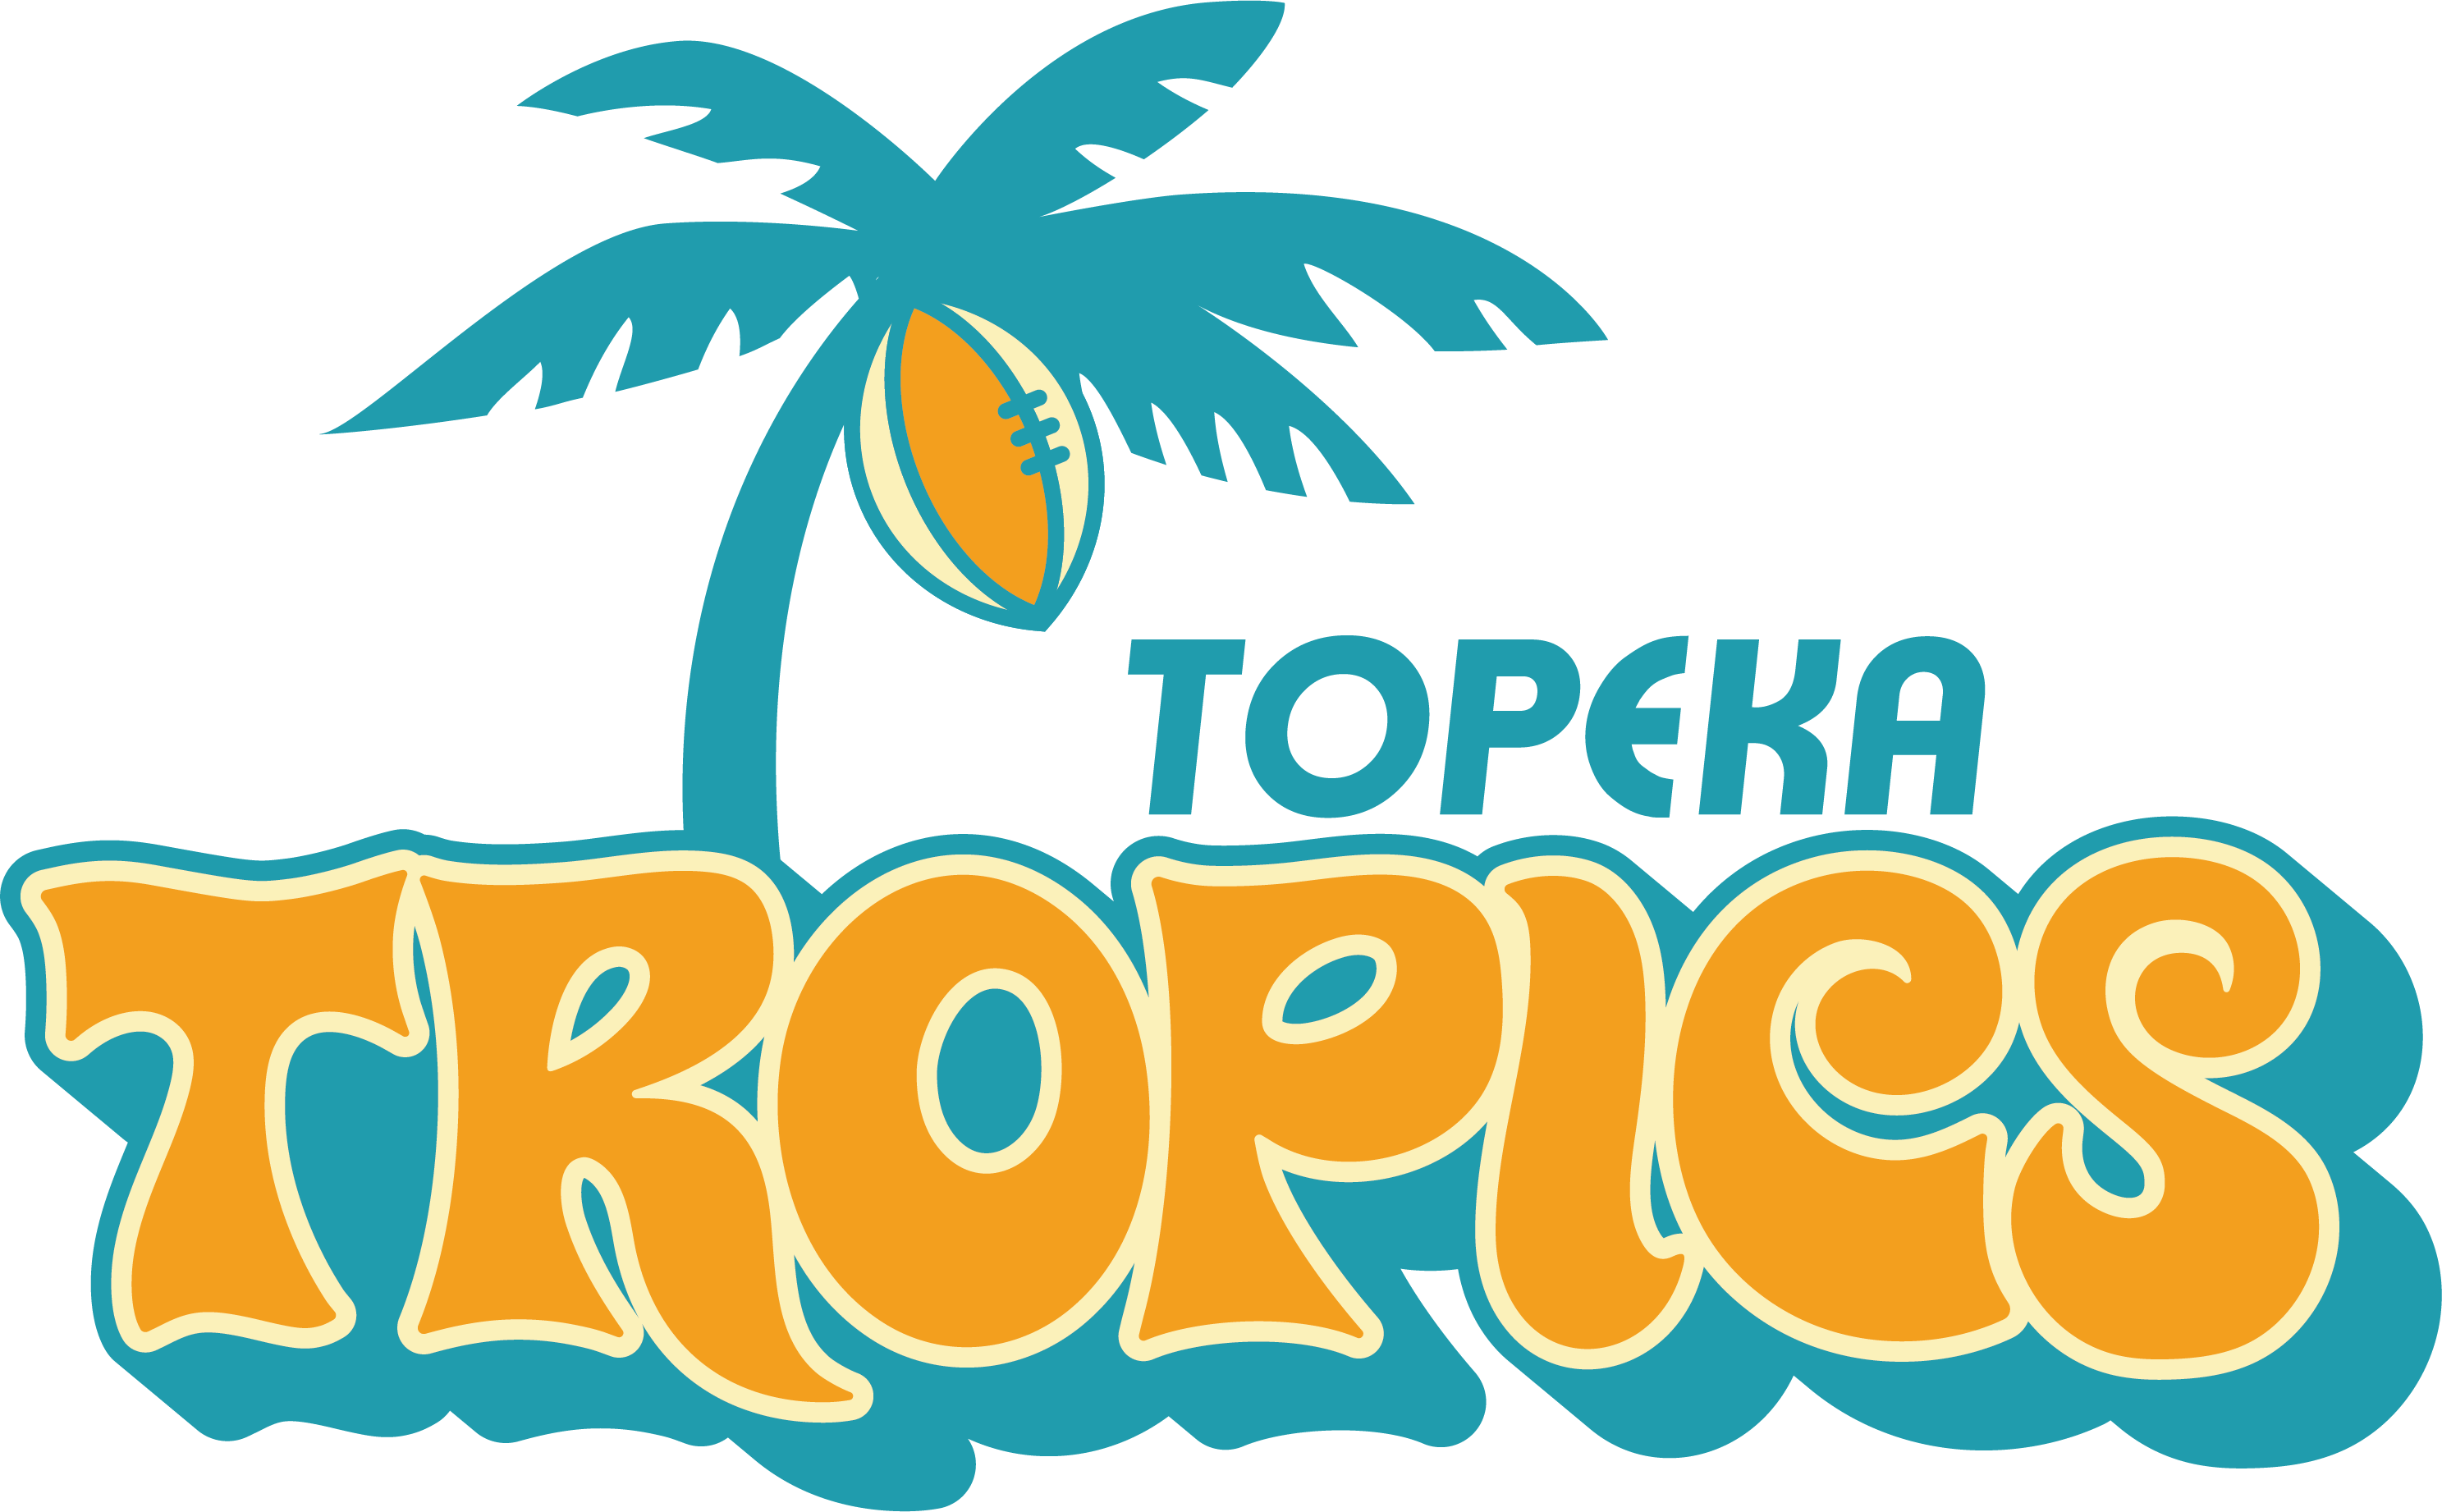 The Topeka Tropics